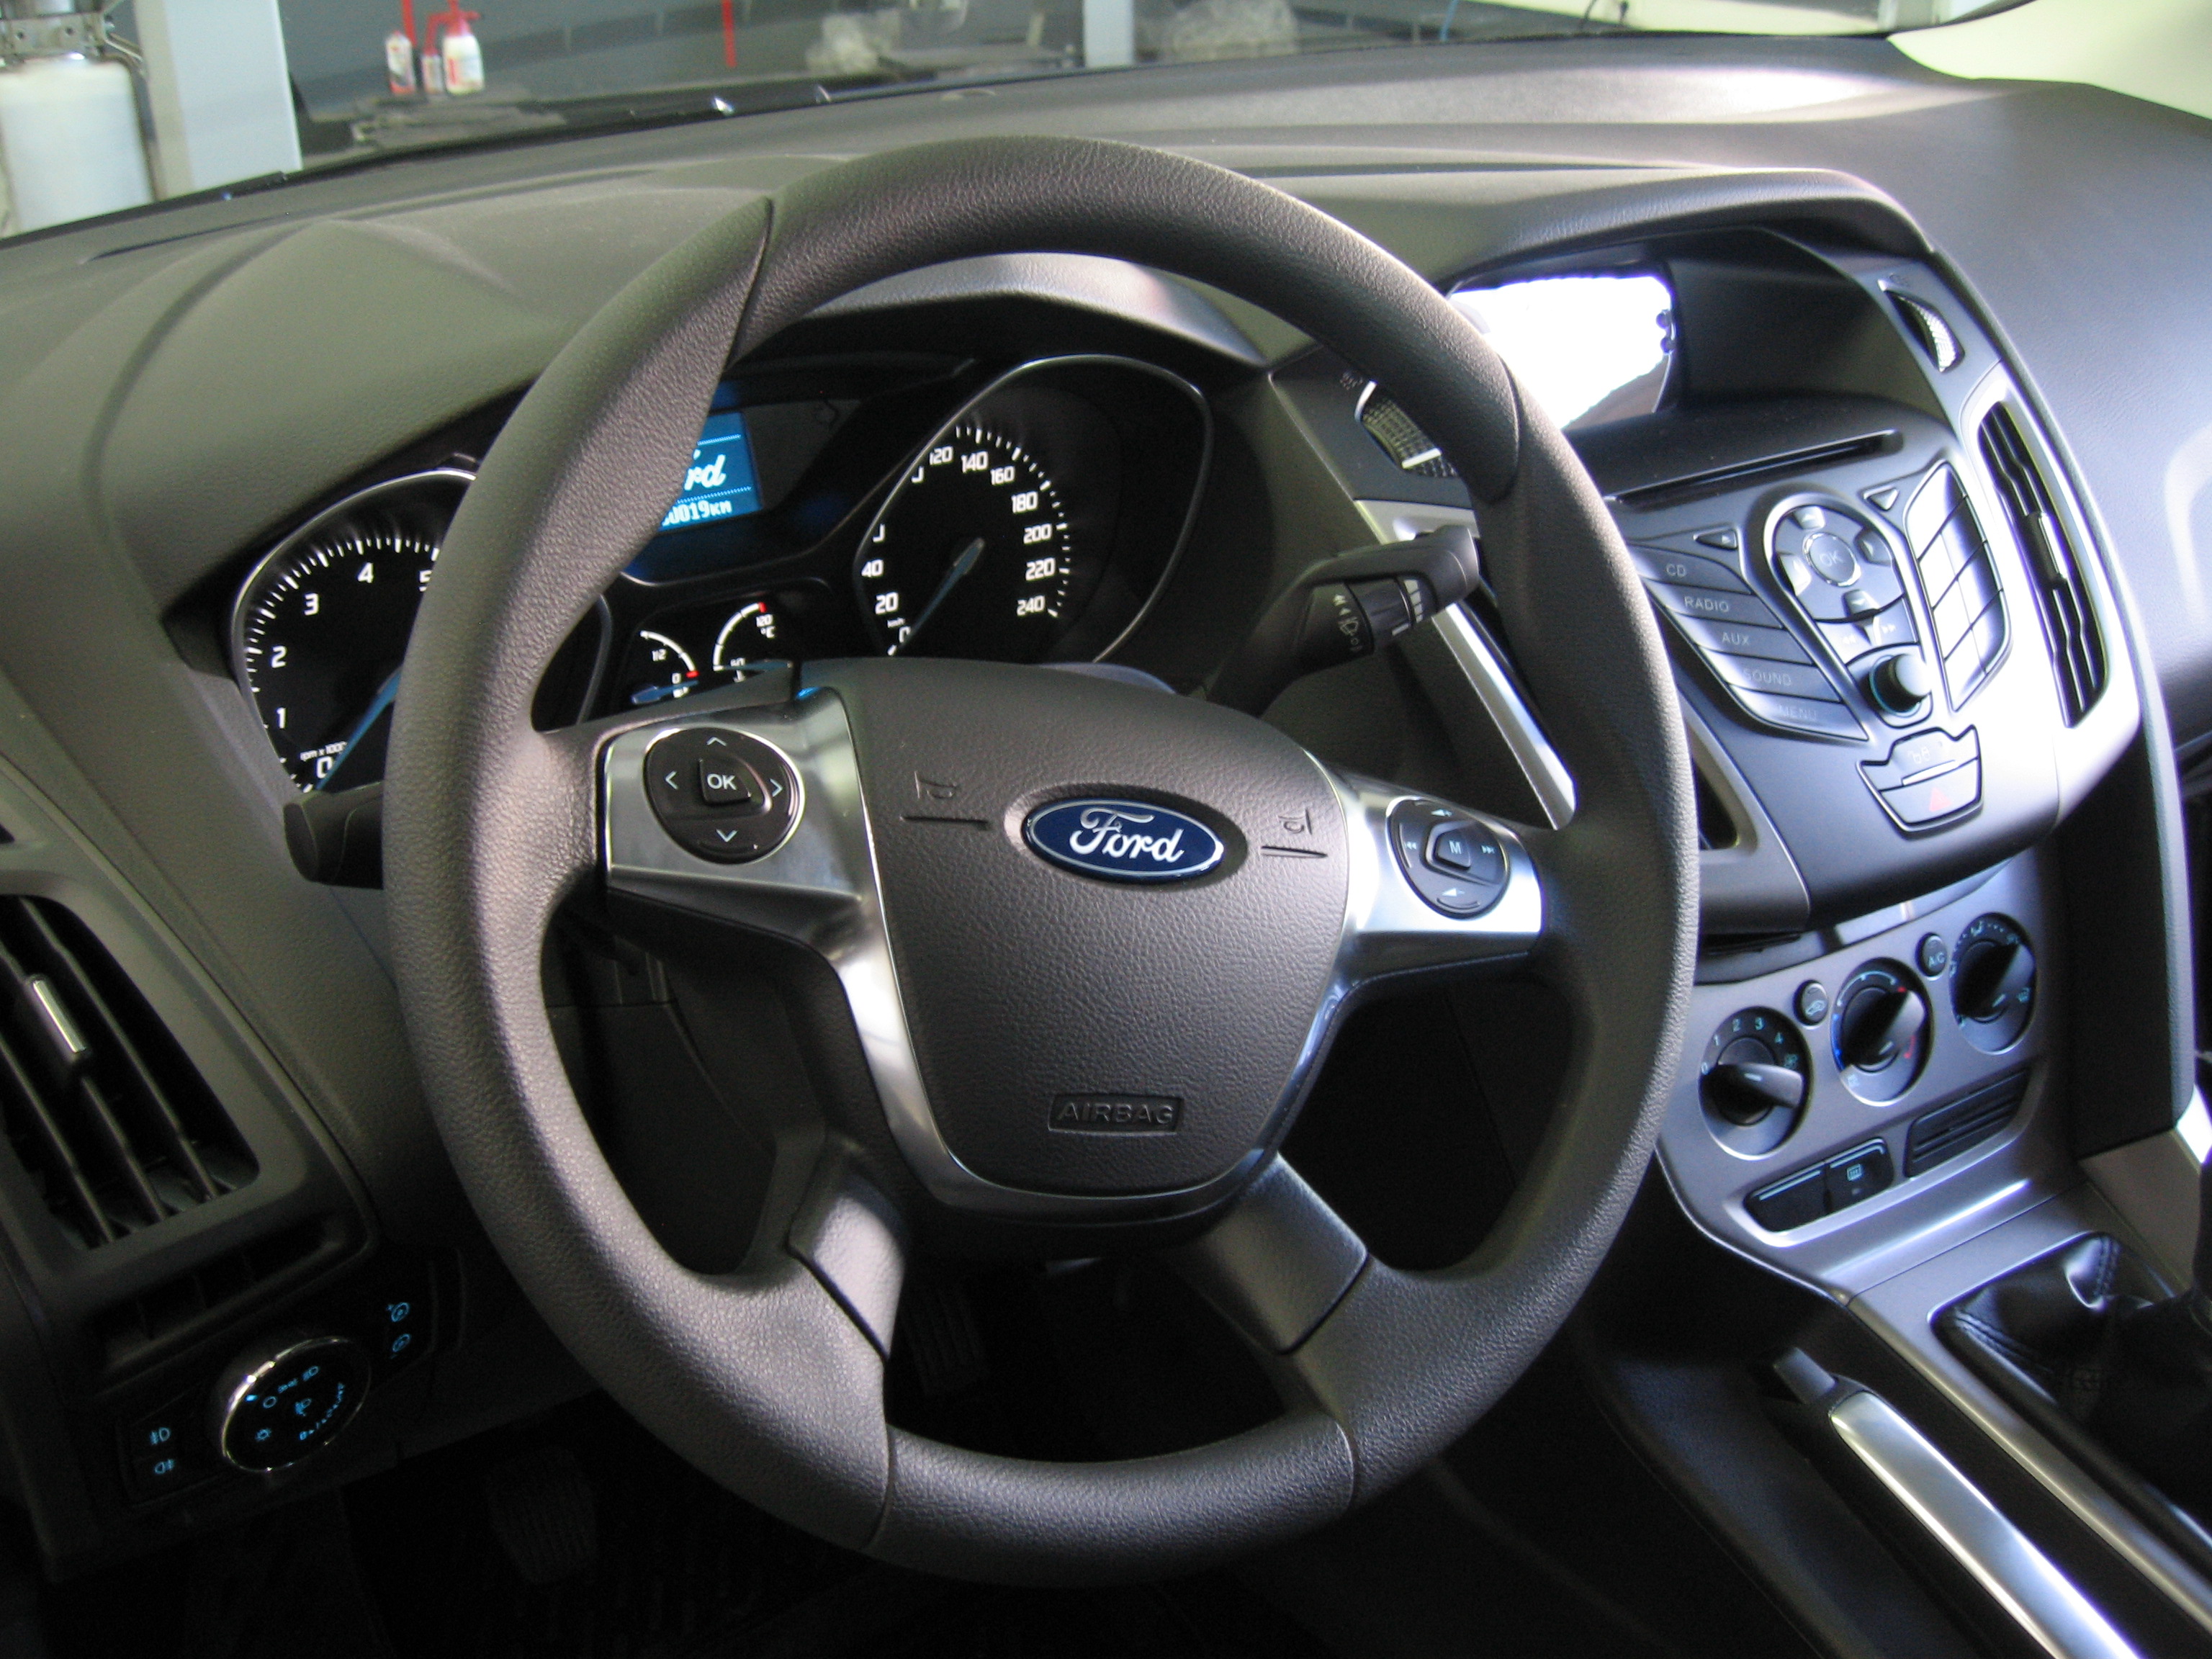 Форд фокус 3 2012 год купить. Ford Focus 3 1.6 105 л.с. Ford Focus 3 1.6 Stage 1. Форд фокус 3 хэтчбек 2012 года 1.6 105 л.с подвеска. Форд фокус 3 1.6 105 л.с улучшенные тормоза.